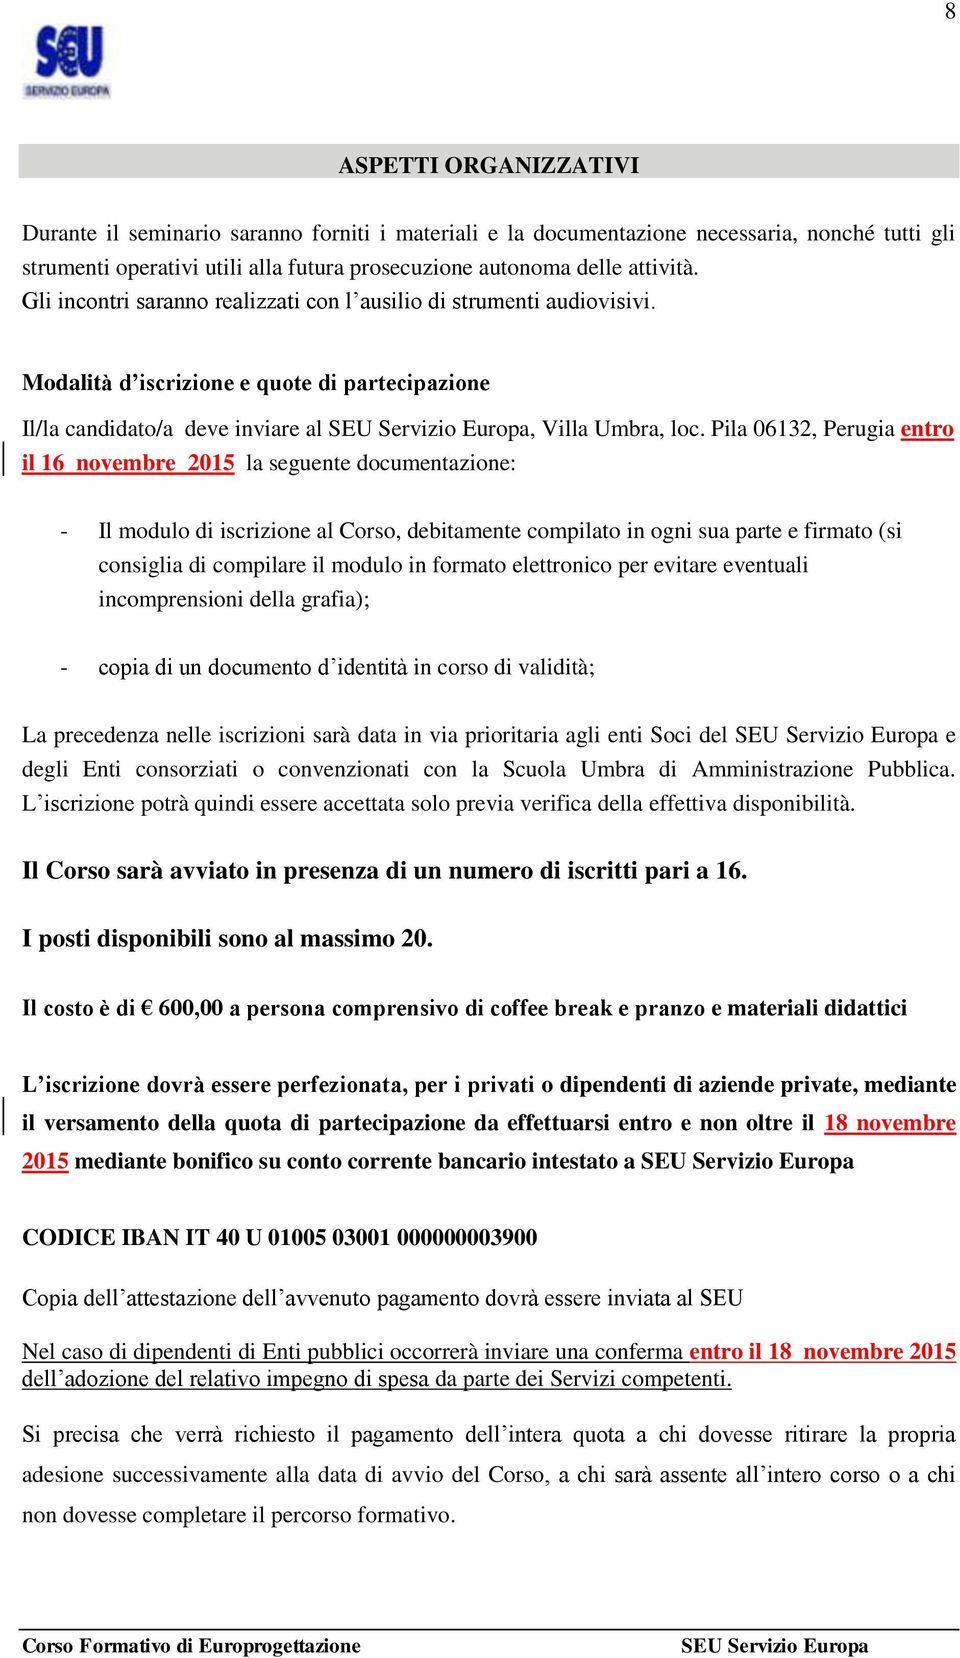 Pila 06132, Perugia entro il 16 novembre 2015 la seguente documentazione: - Il modulo di iscrizione al Corso, debitamente compilato in ogni sua parte e firmato (si consiglia di compilare il modulo in